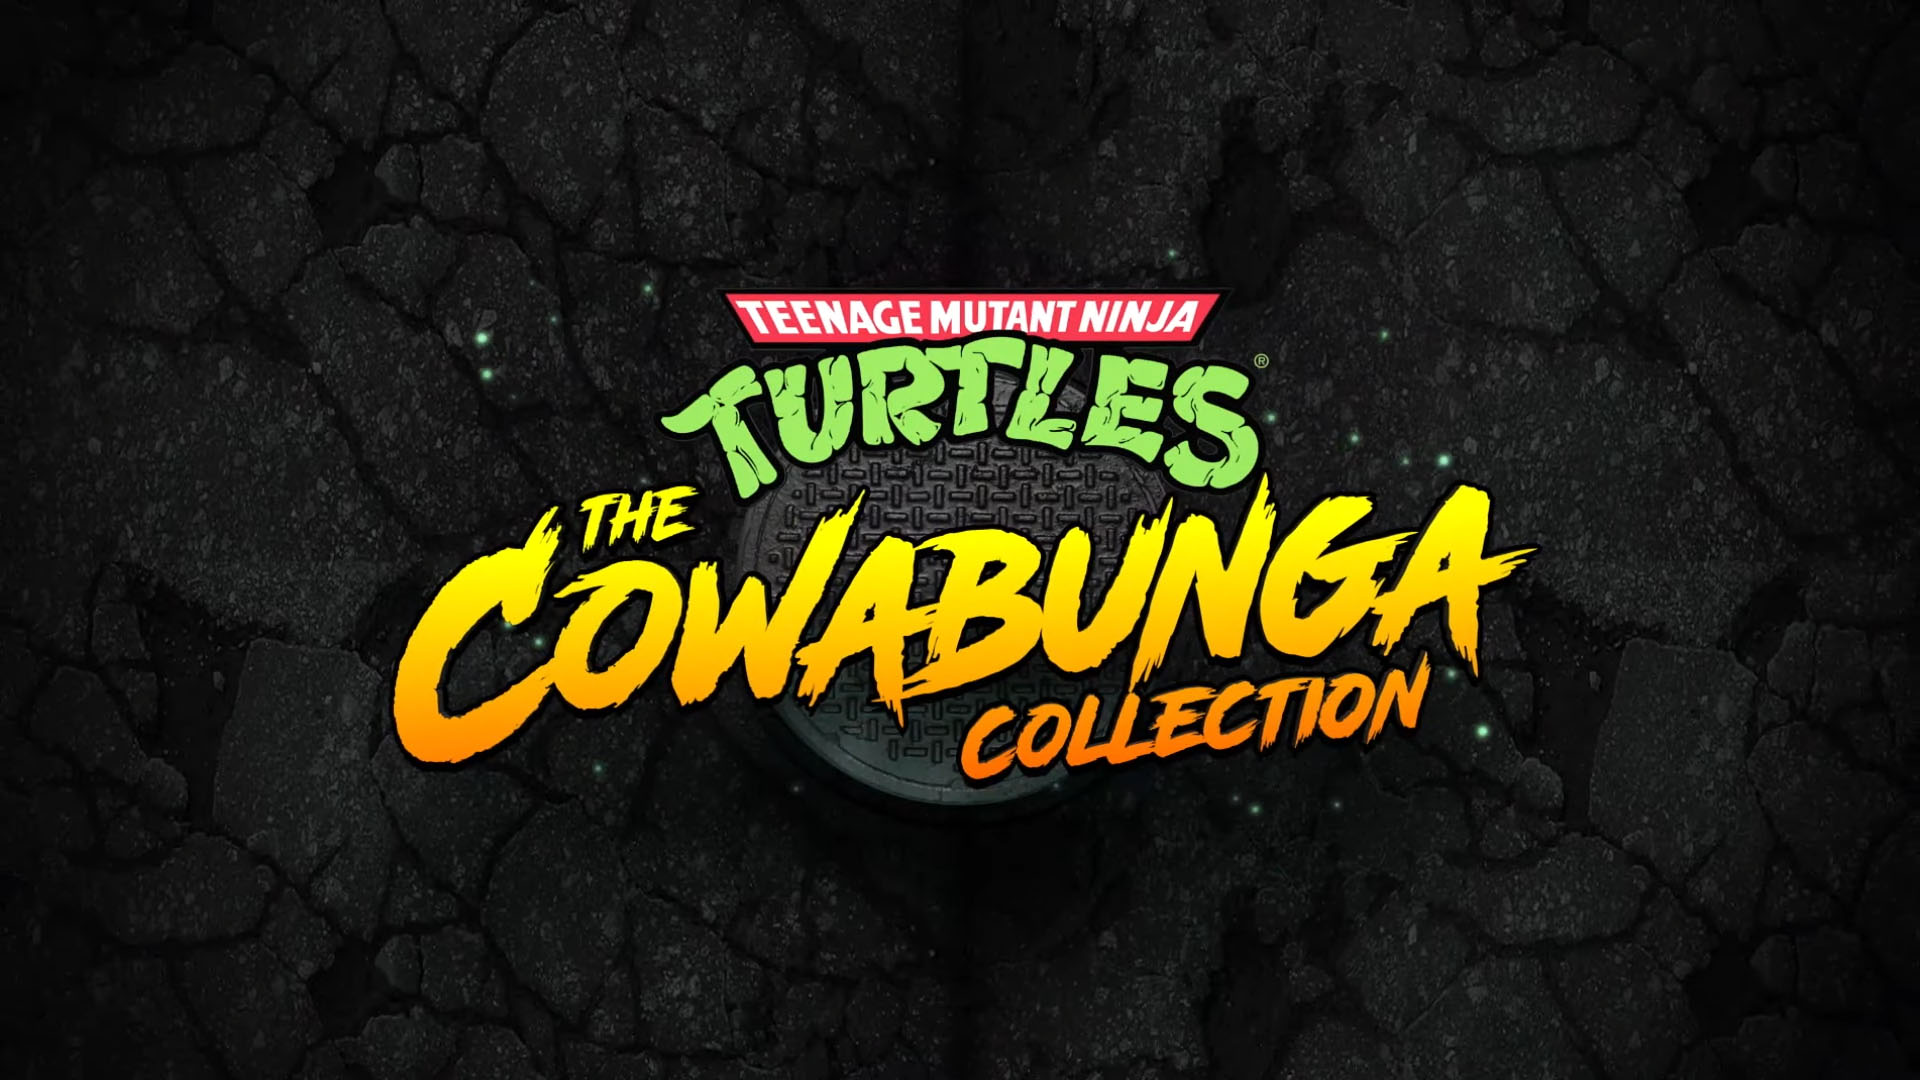 Teenage Mutant Ninja Turtles: Cowabunga Collection на Xbox получает обновление с новым режимом и контентом: с сайта NEWXBOXONE.RU